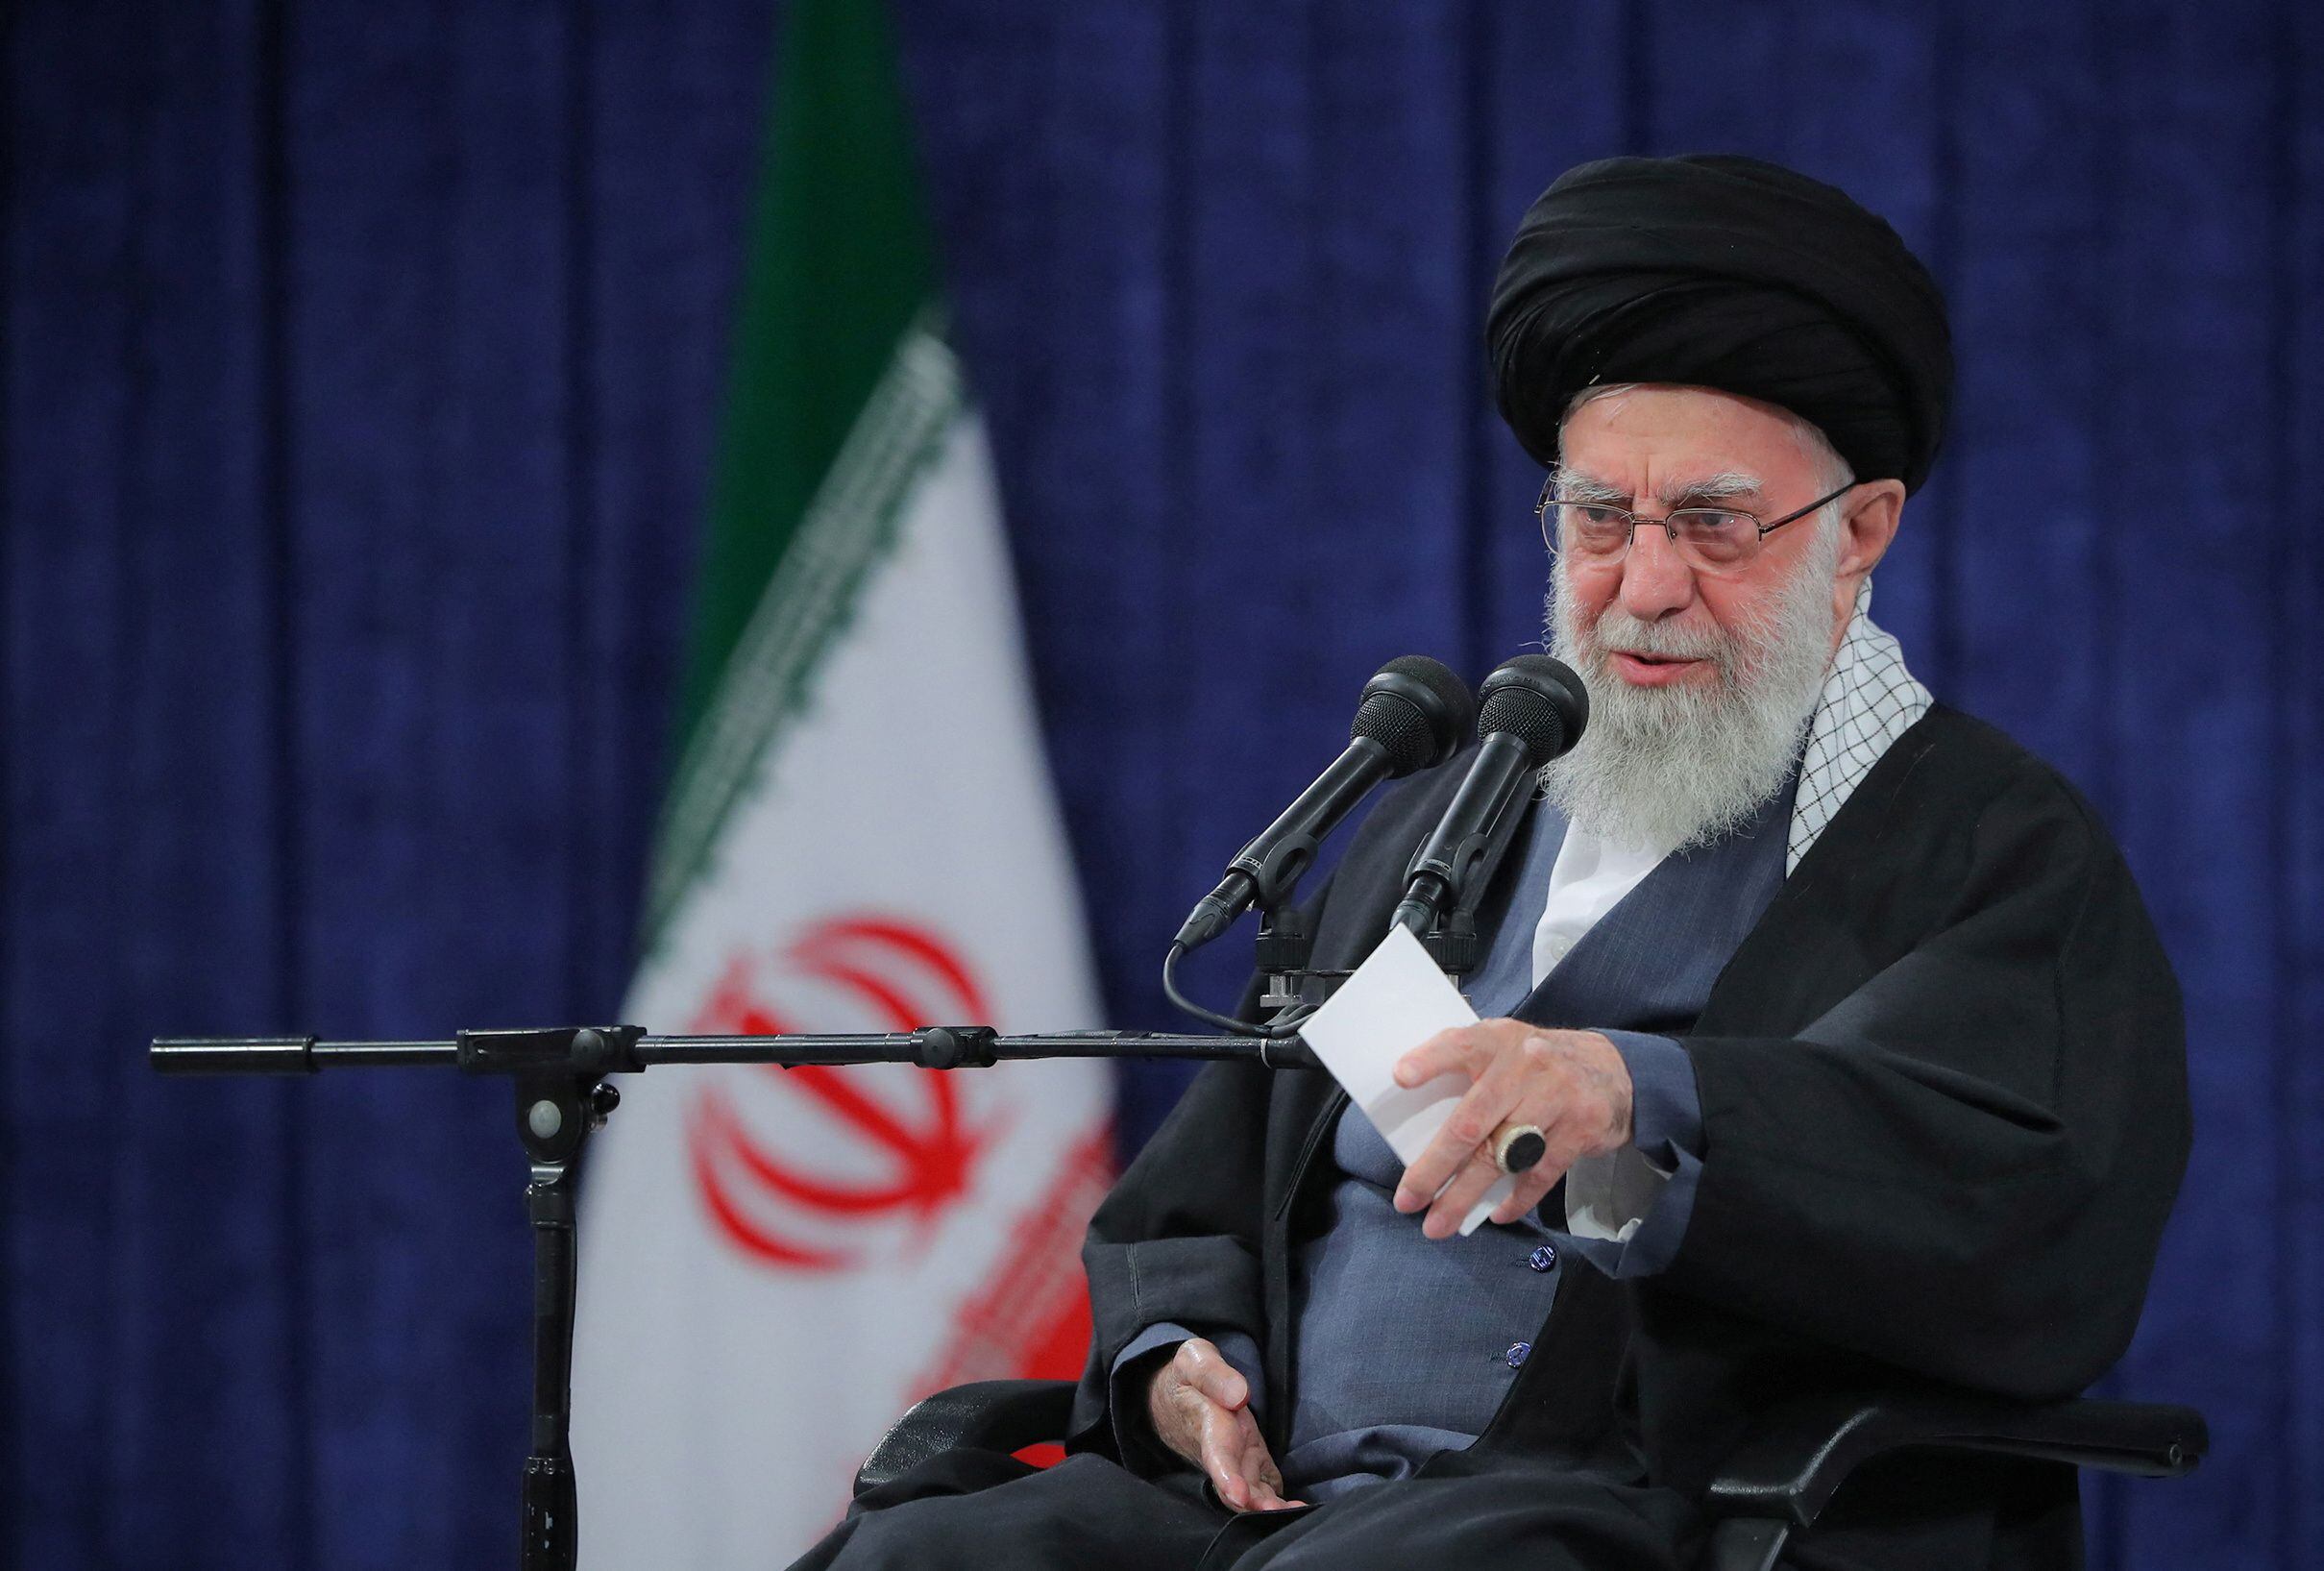 Este miércoles, el líder supremo de Irán prometió el “colapso y la destrucción” de Israel tras el ataque contra el consulado (REUTERS)